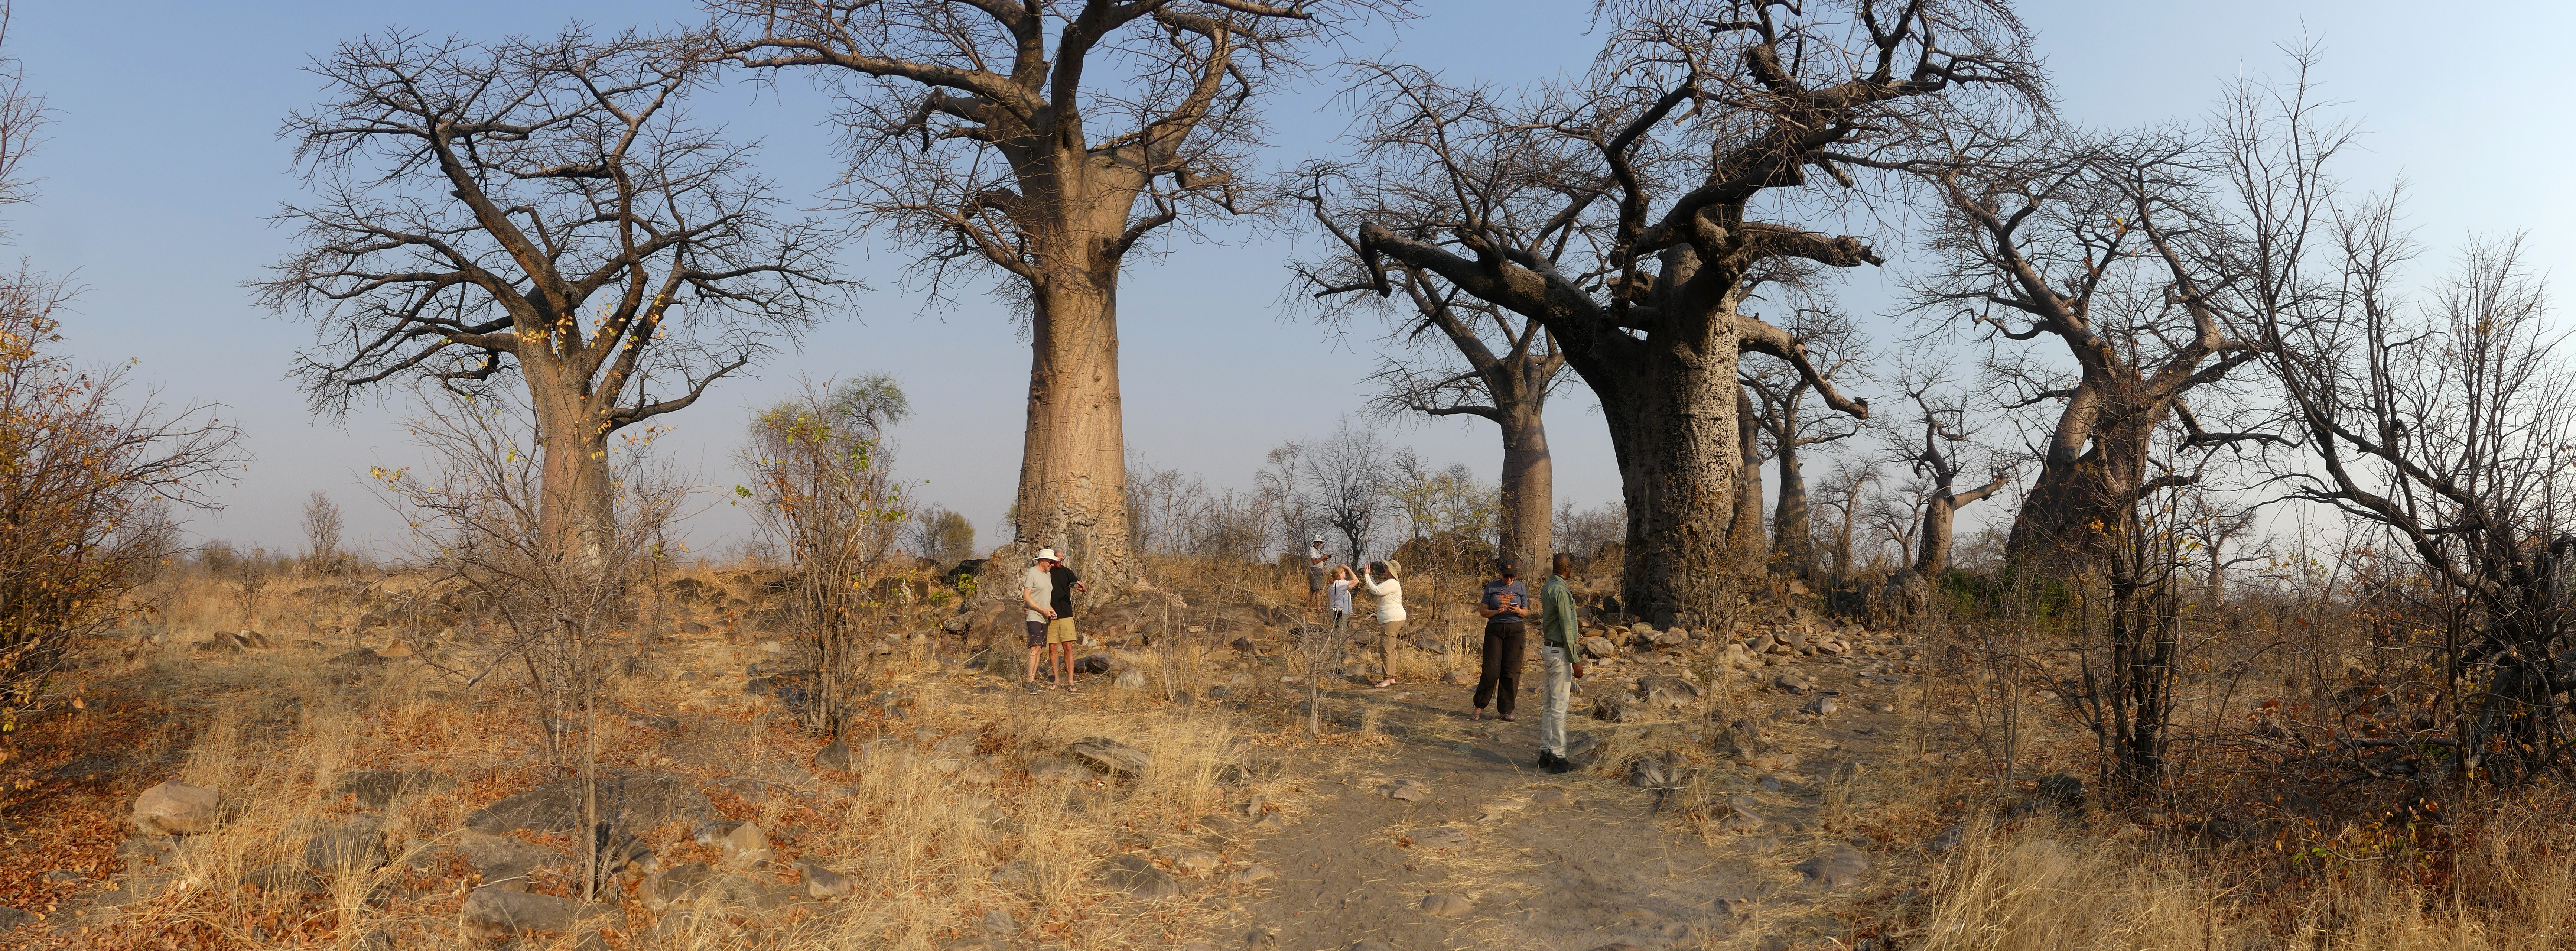 baobab panorama